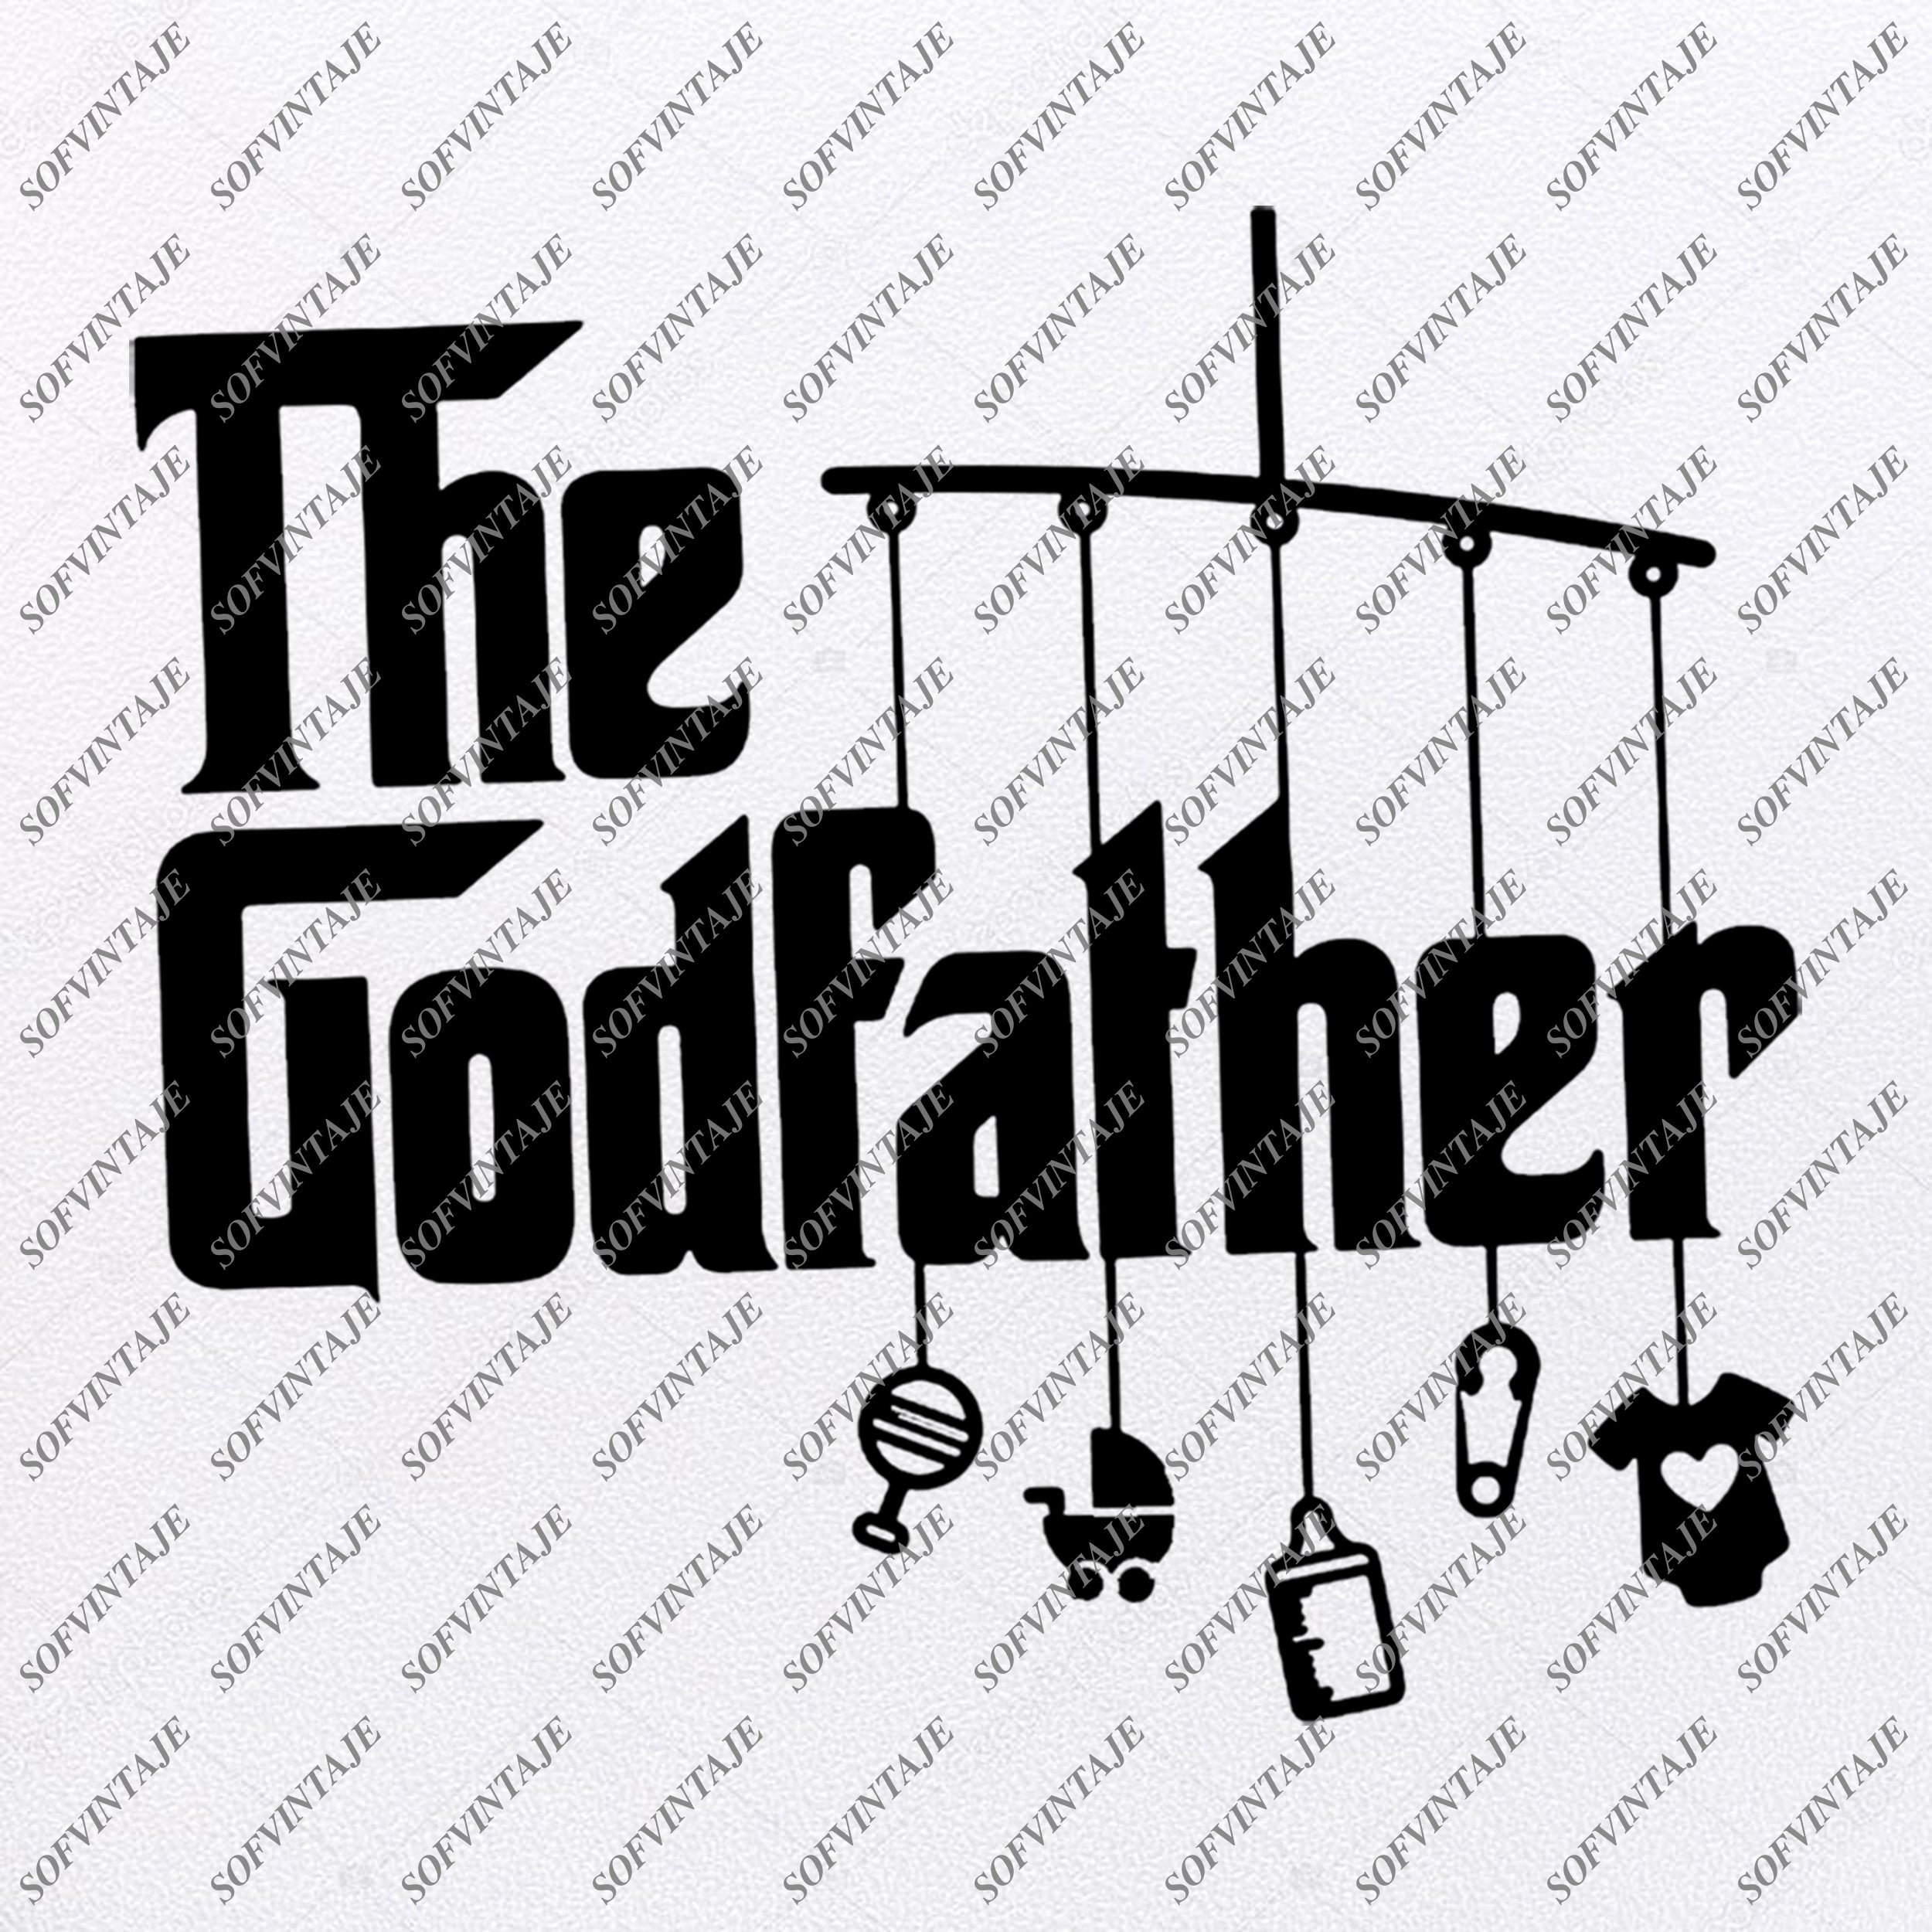 Download The Godfather Svg Files Godfather Svg Original Design Clipart Sv Sofvintaje